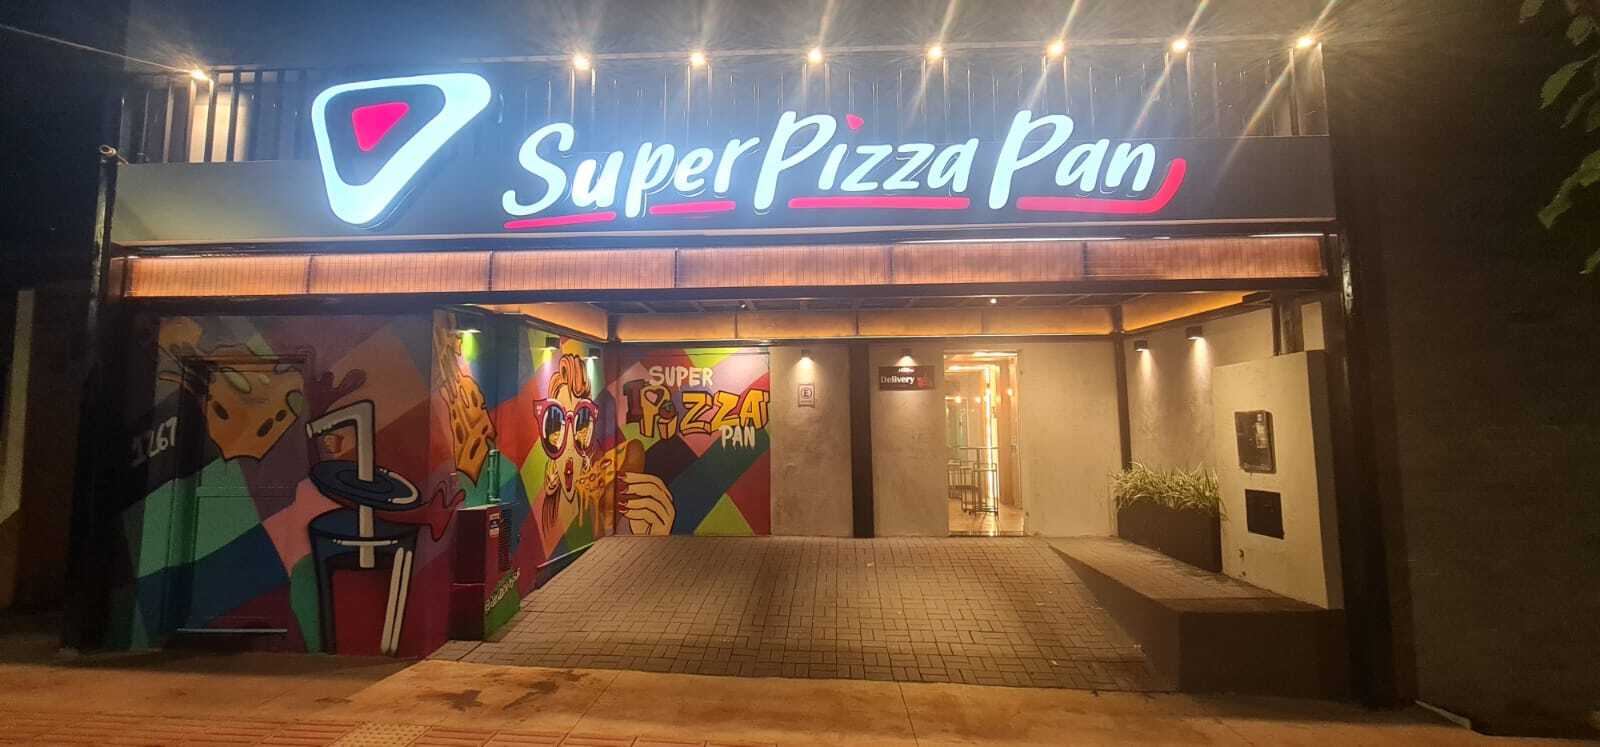 Super Pizza - Super Pizza Pan